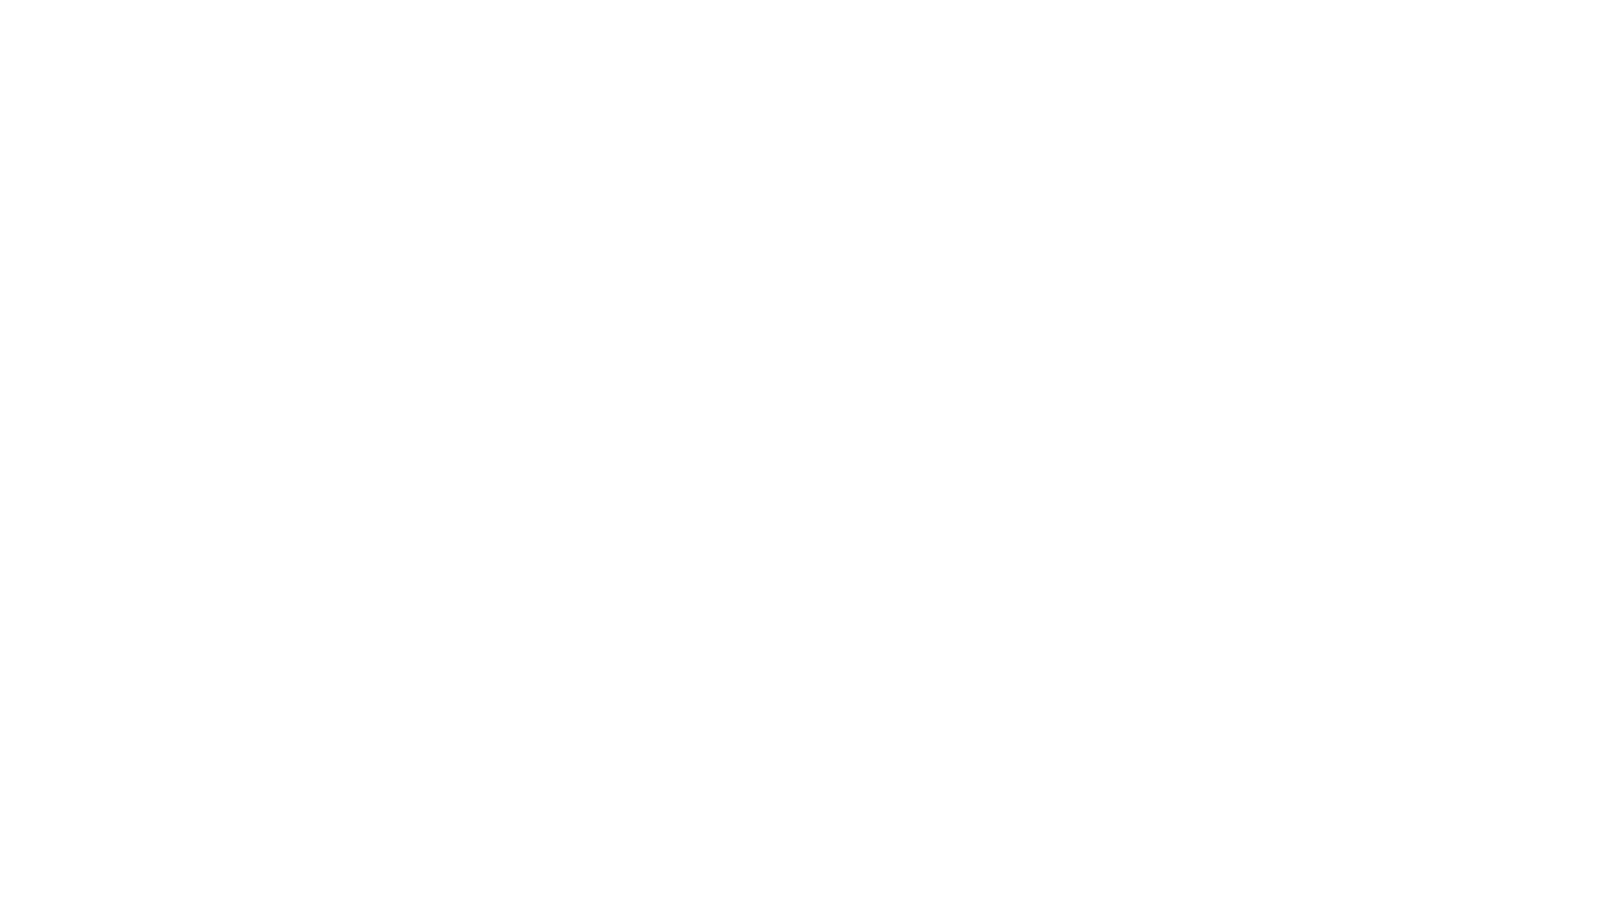 Parcourez les premières galeries de l'exposition "Basquiat x Warhol, à quatre mains" en compagnie de deux médiateurs de la Fondation, Emma et Antolin. Découvrez ainsi les origines de la collaboration entre les deux artistes, et les détails cachés de leurs œuvres présentées à la Fondation.

Take a tour of the first galleries of the "Basquiat x Warhol. Painting Four Hands" exhibition, accompanied by two guides of the Fondation, Emma and Antolin. Discover the origins of the collaboration between the two artists, and the hidden details of their works on view at the Fondation.

Suivre la Fondation:
 
Facebook : https://www.facebook.com/FondationLou...
Instagram : https://www.instagram.com/fondationlv/
Twitter : https://twitter.com/FondationLV
TikTok : https://www.tiktok.com/@fondationlv
LinkedIn : https://www.linkedin.com/company/fond...